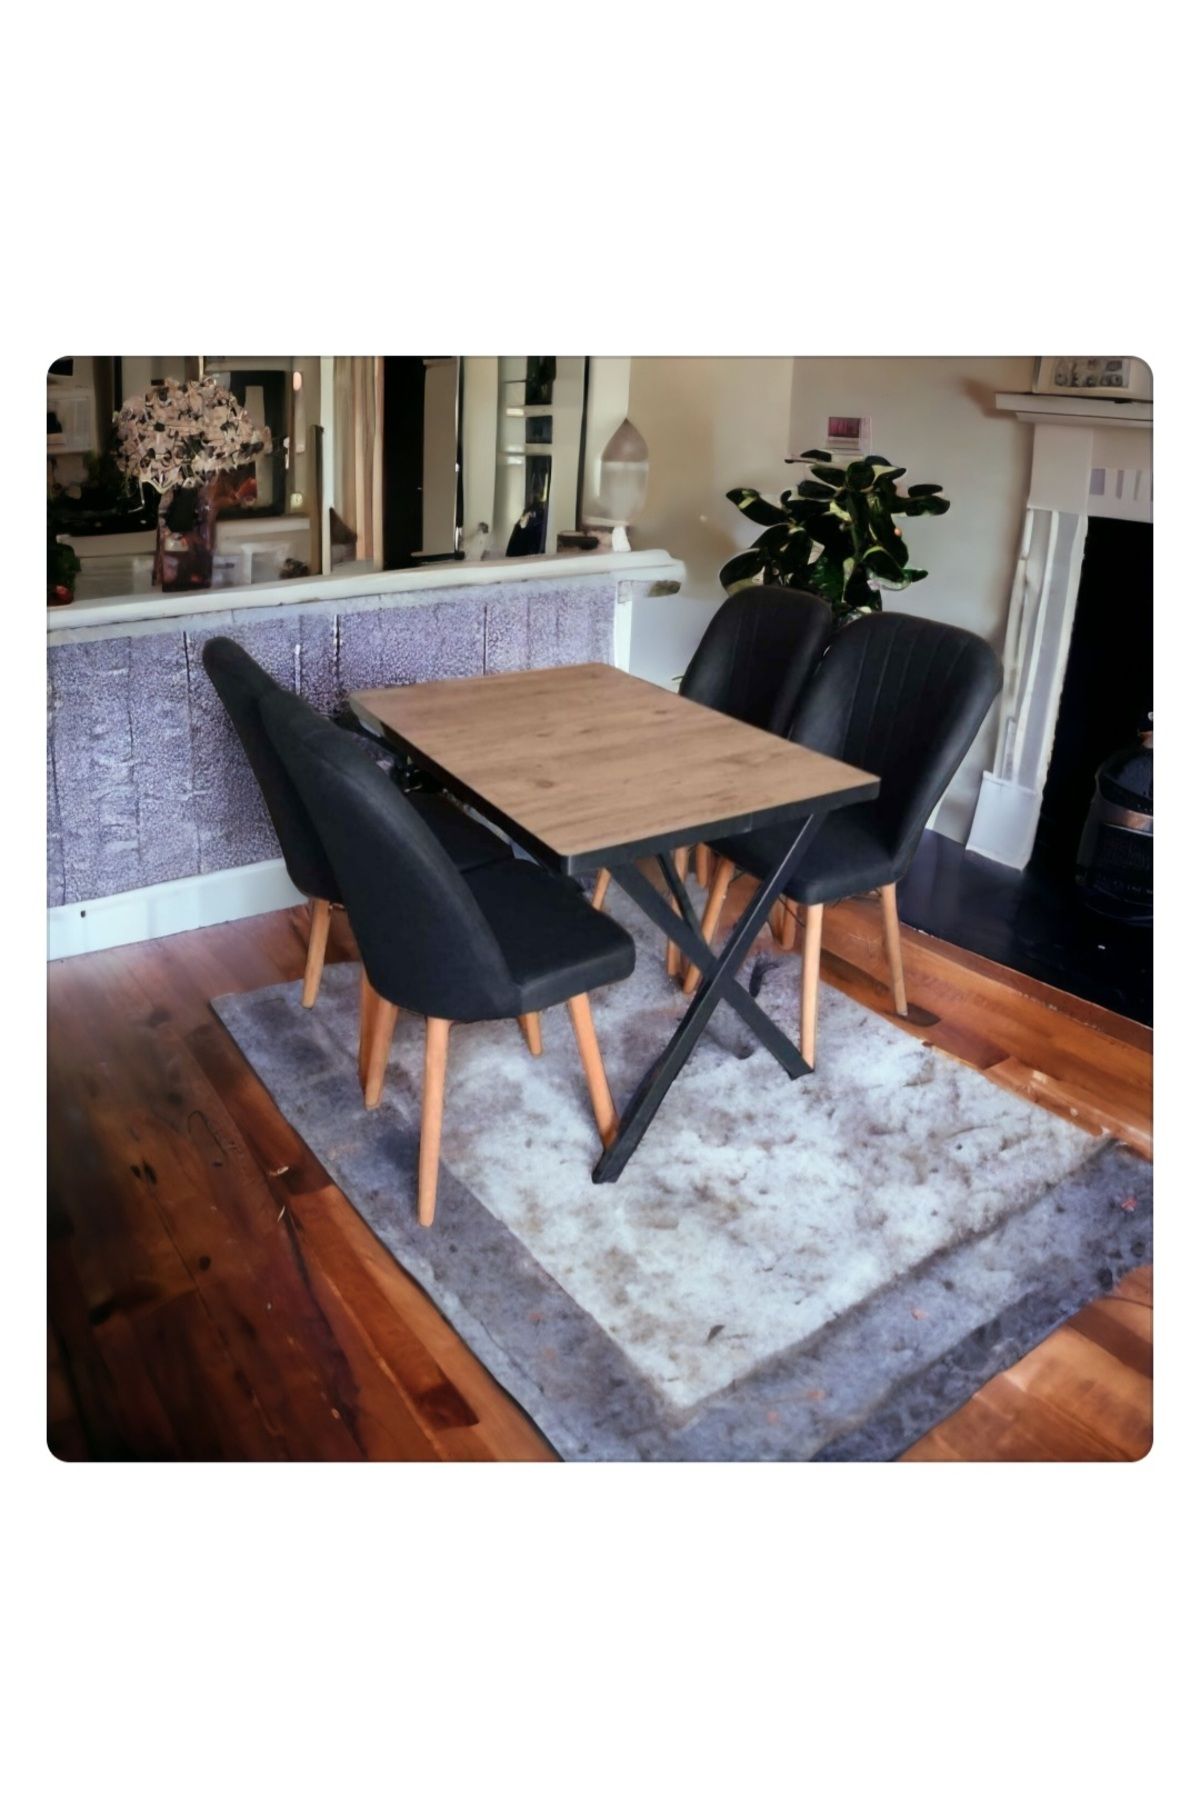 mc mobilya 4 Kişilik Masa Sandalye Takımı Mutfak Masası Takımı Salon Masası Yemek Masası Masa Takımı